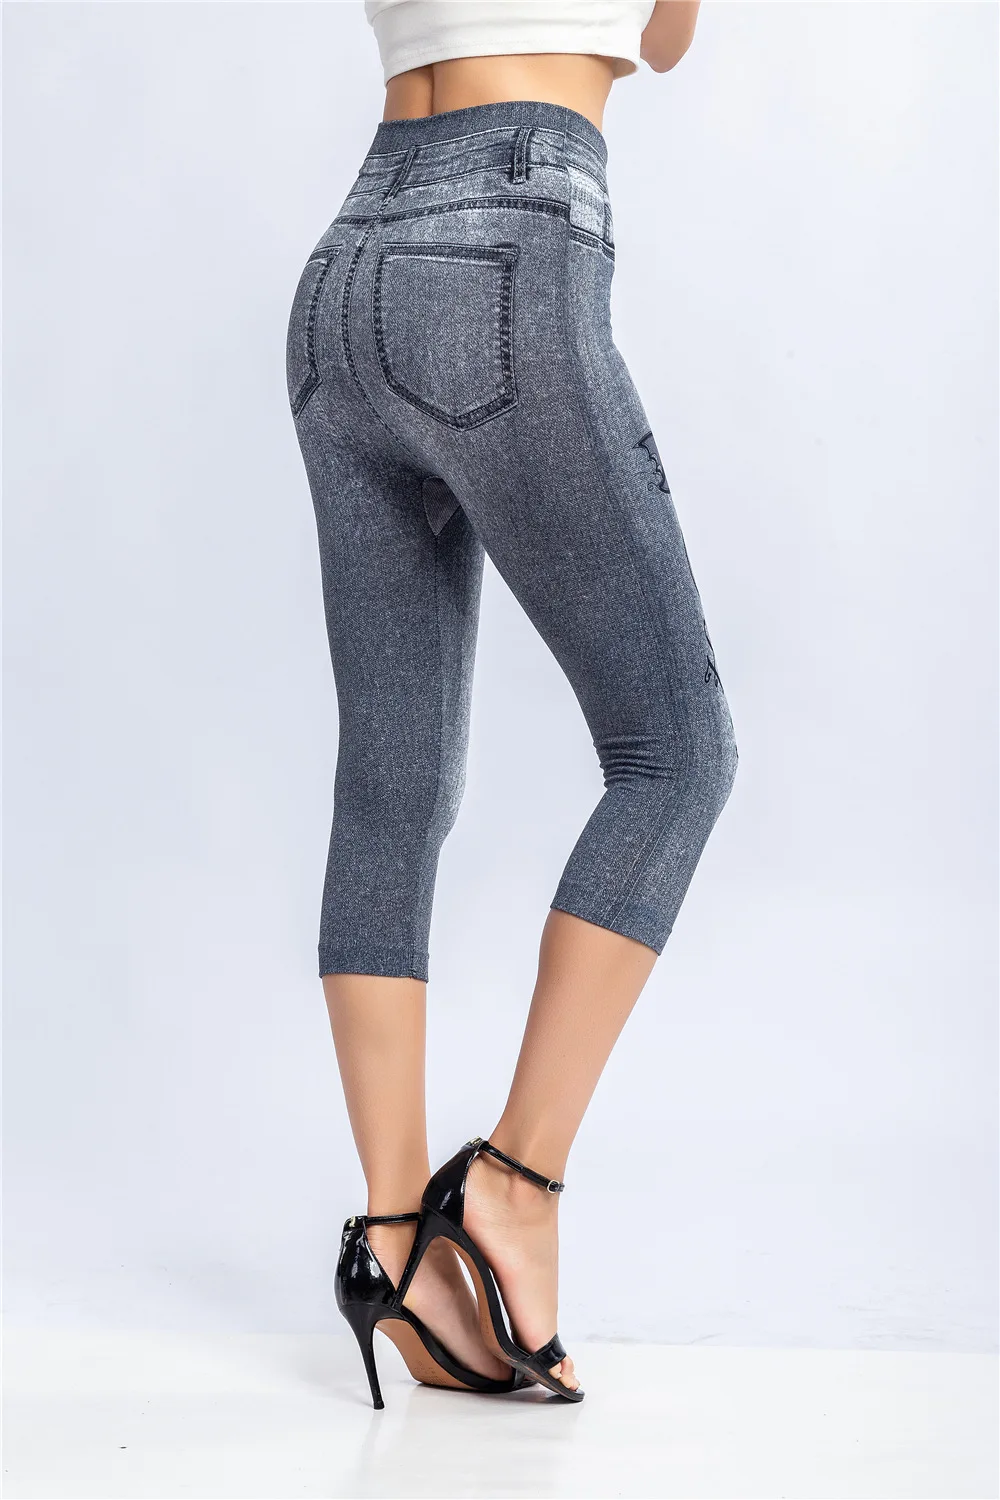 carhartt leggings Women Plus Size Leggings Imitation Cropped Trousers 2021 New Mock Pocket Pants Slim Jeggings Denim Skinny aerie crossover leggings